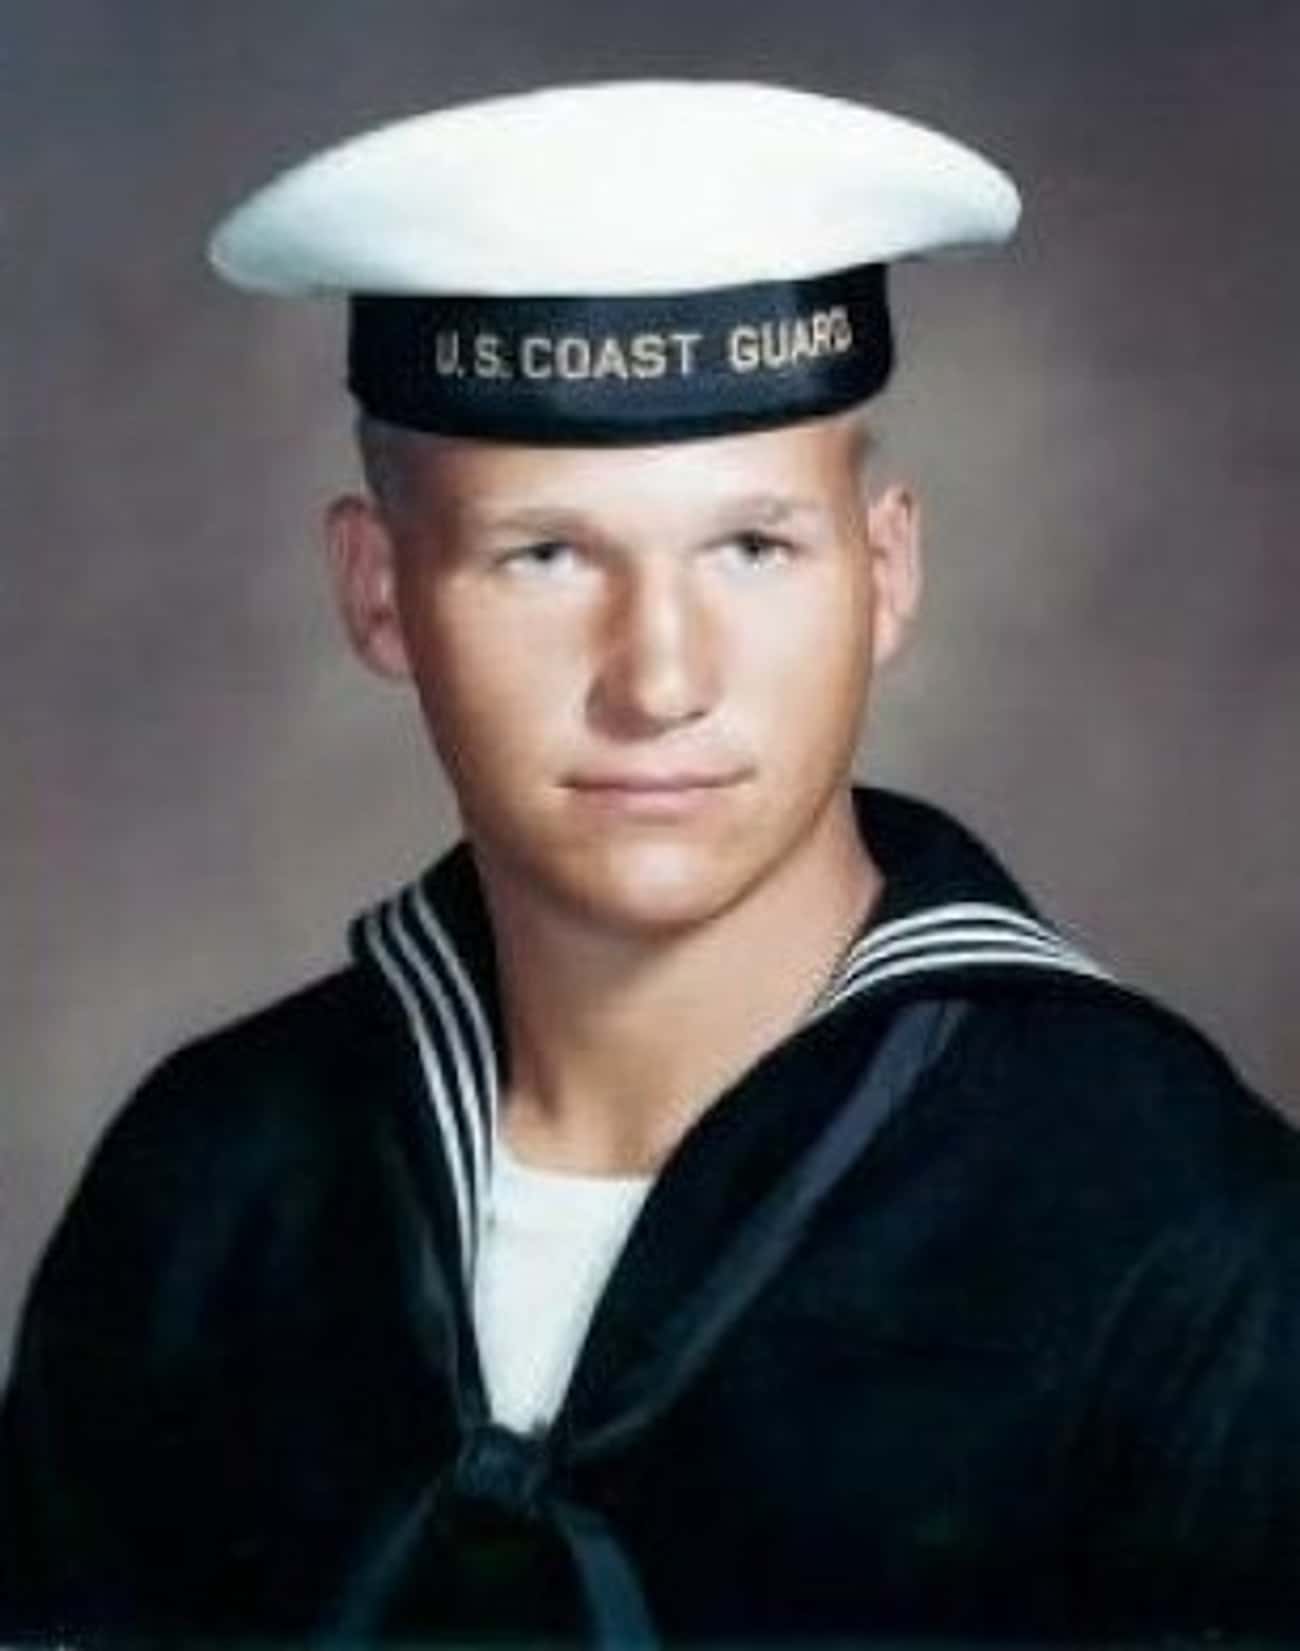 Young Jeff Bridges in a Coast Guard Uniform